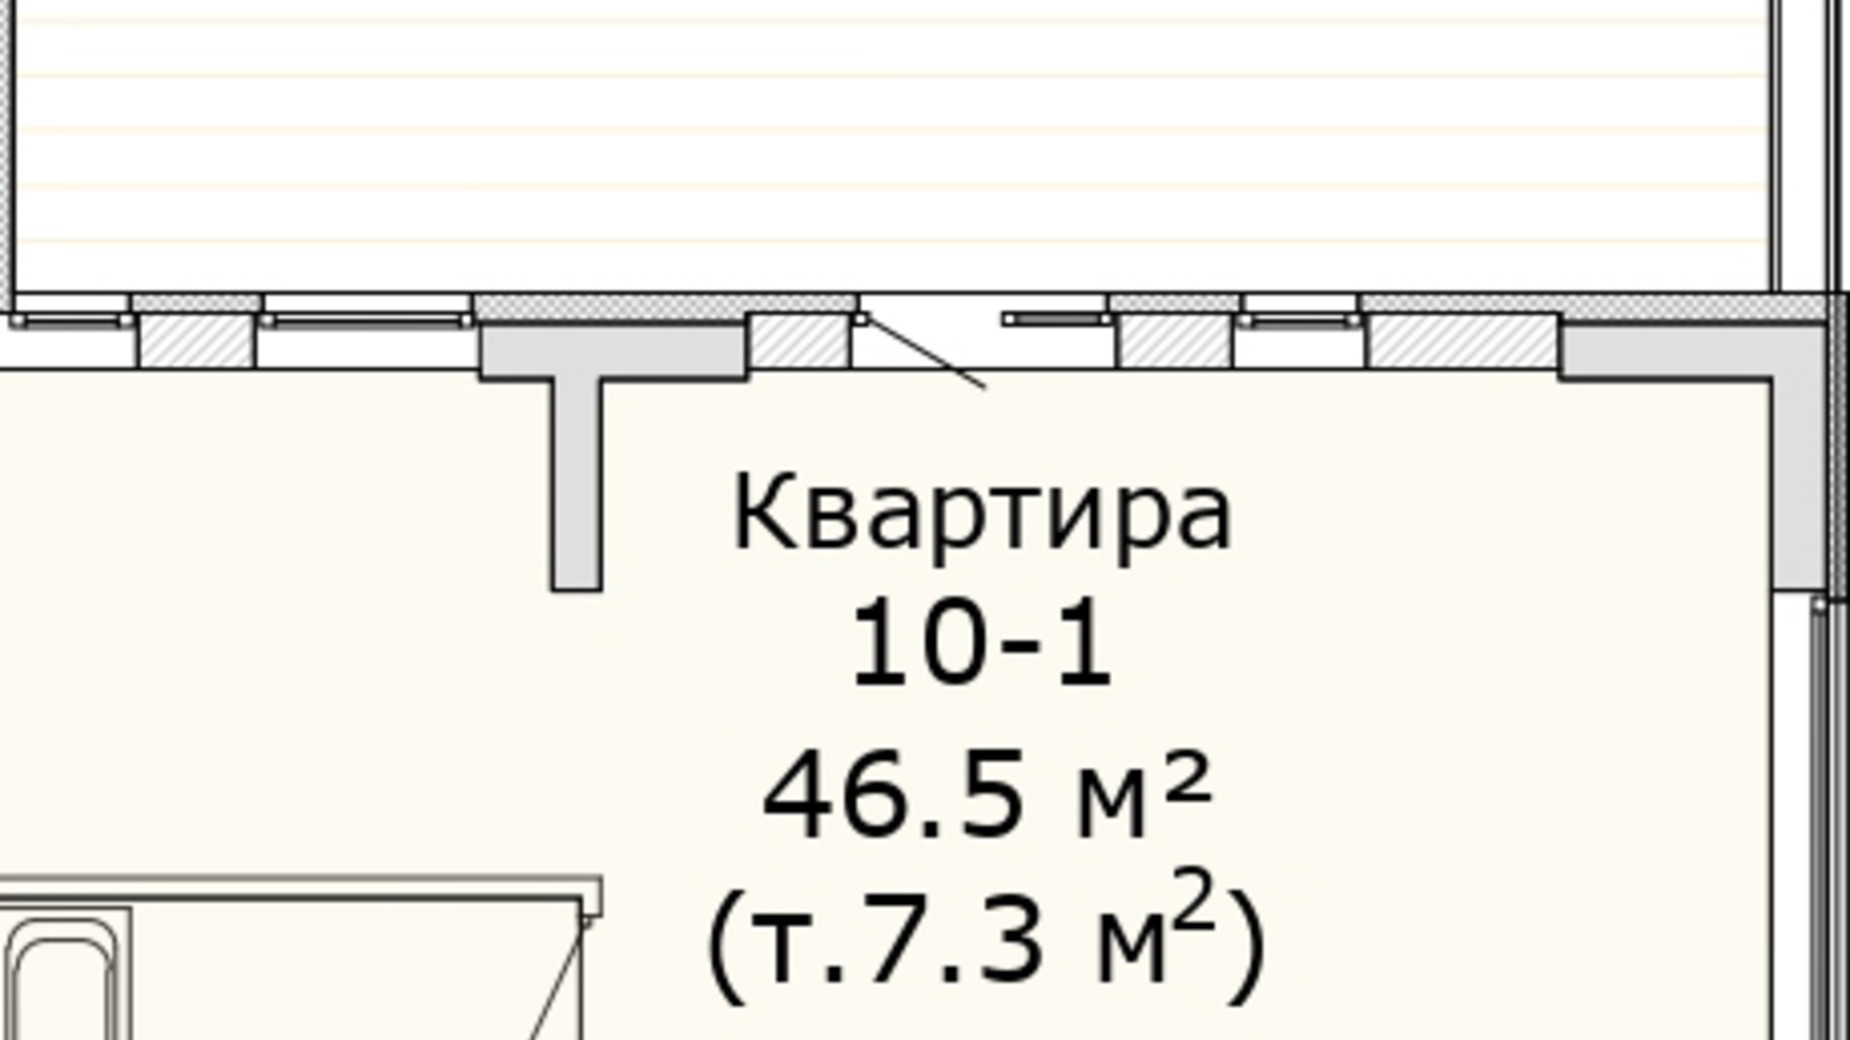 Планировка 1-комнатной квартиры в МФК Industrial 46.5 м², фото 714761